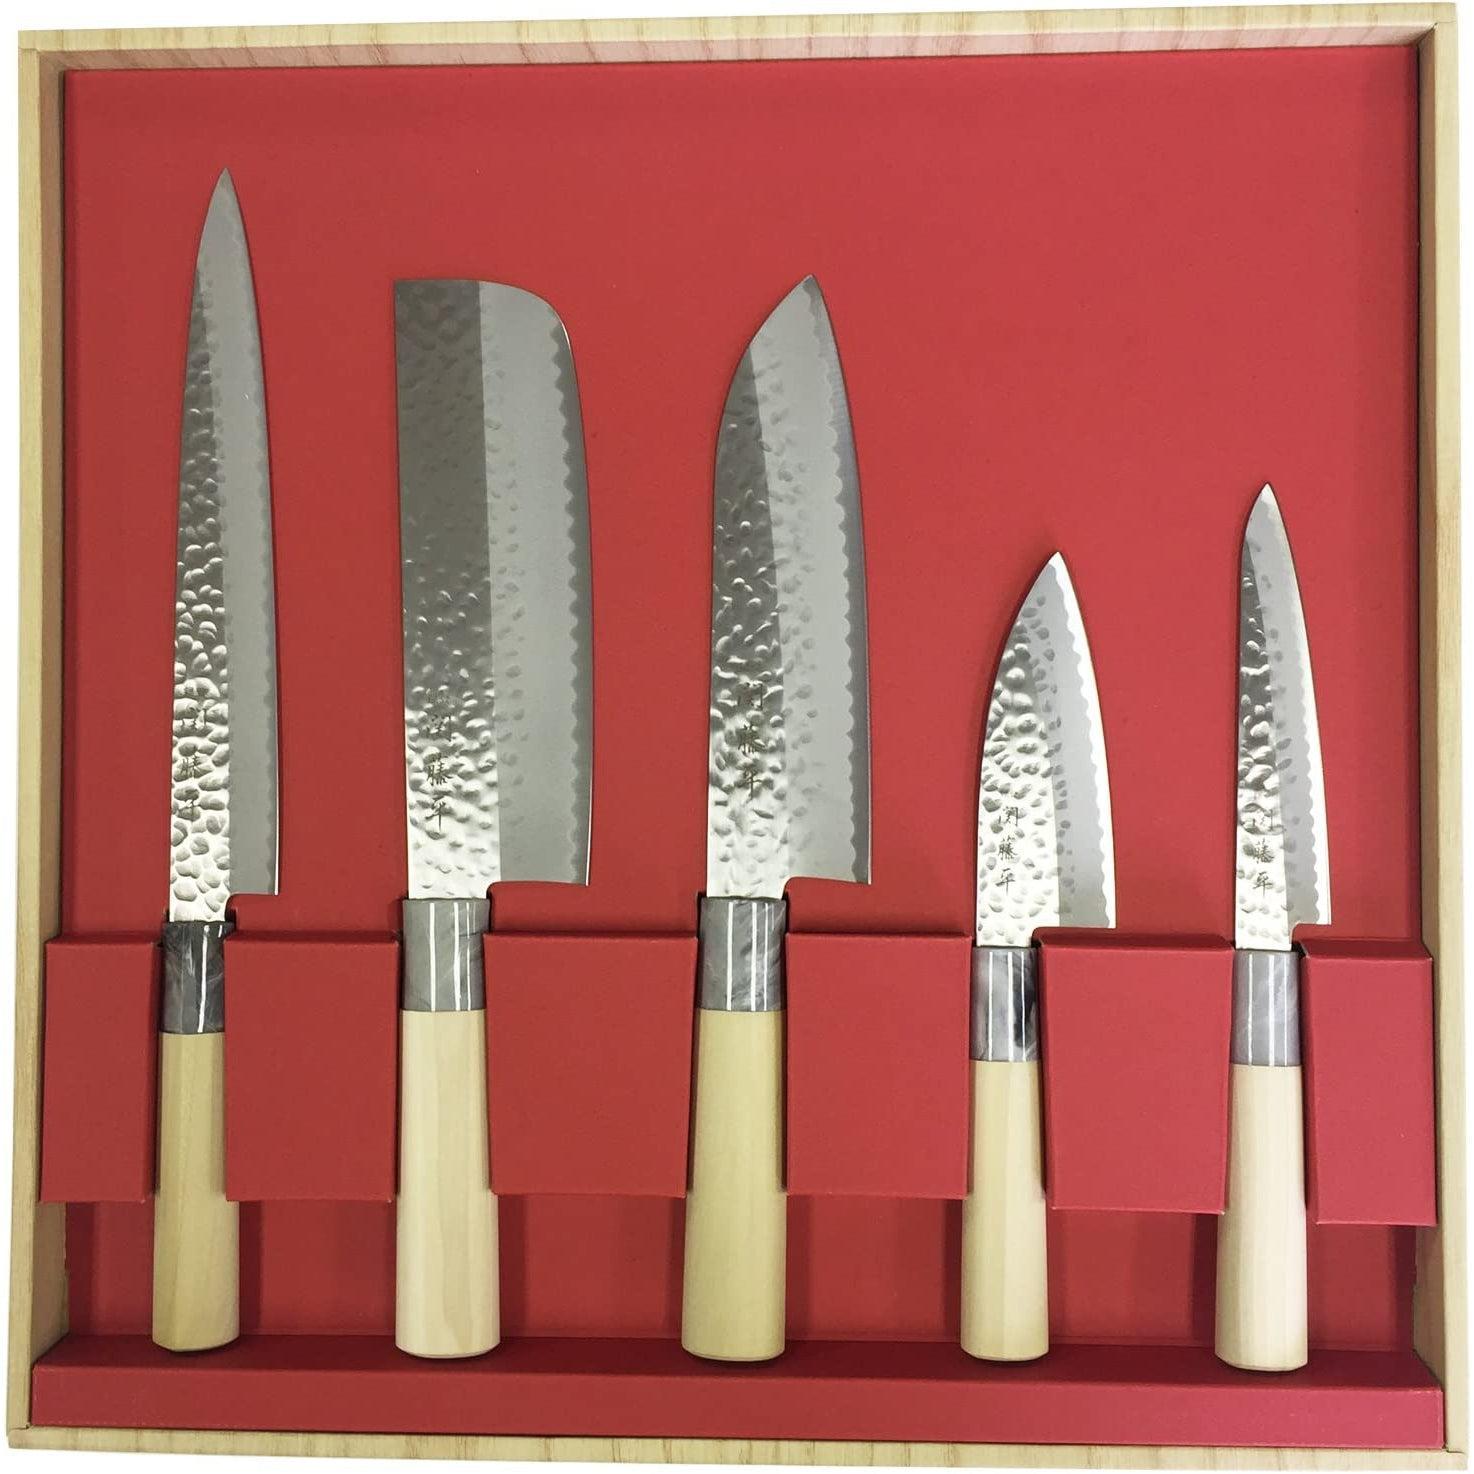  Japanese Knife Set